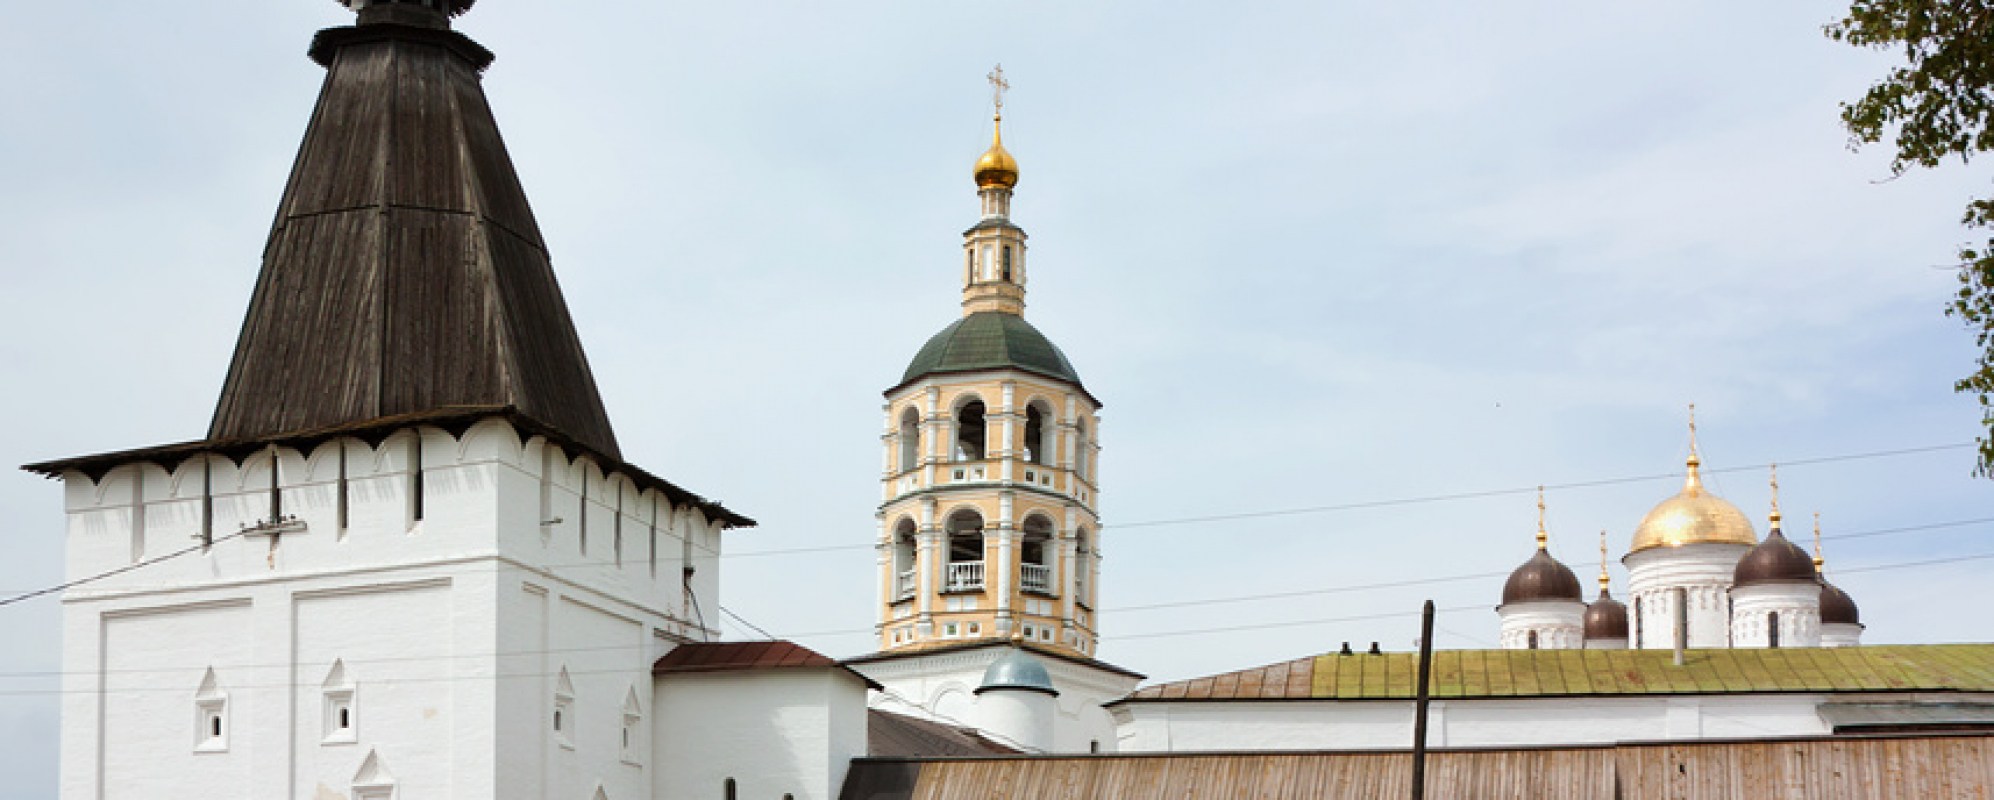 Фотографии достопримечательности Свято-Пафнутьев Боровский монастырь